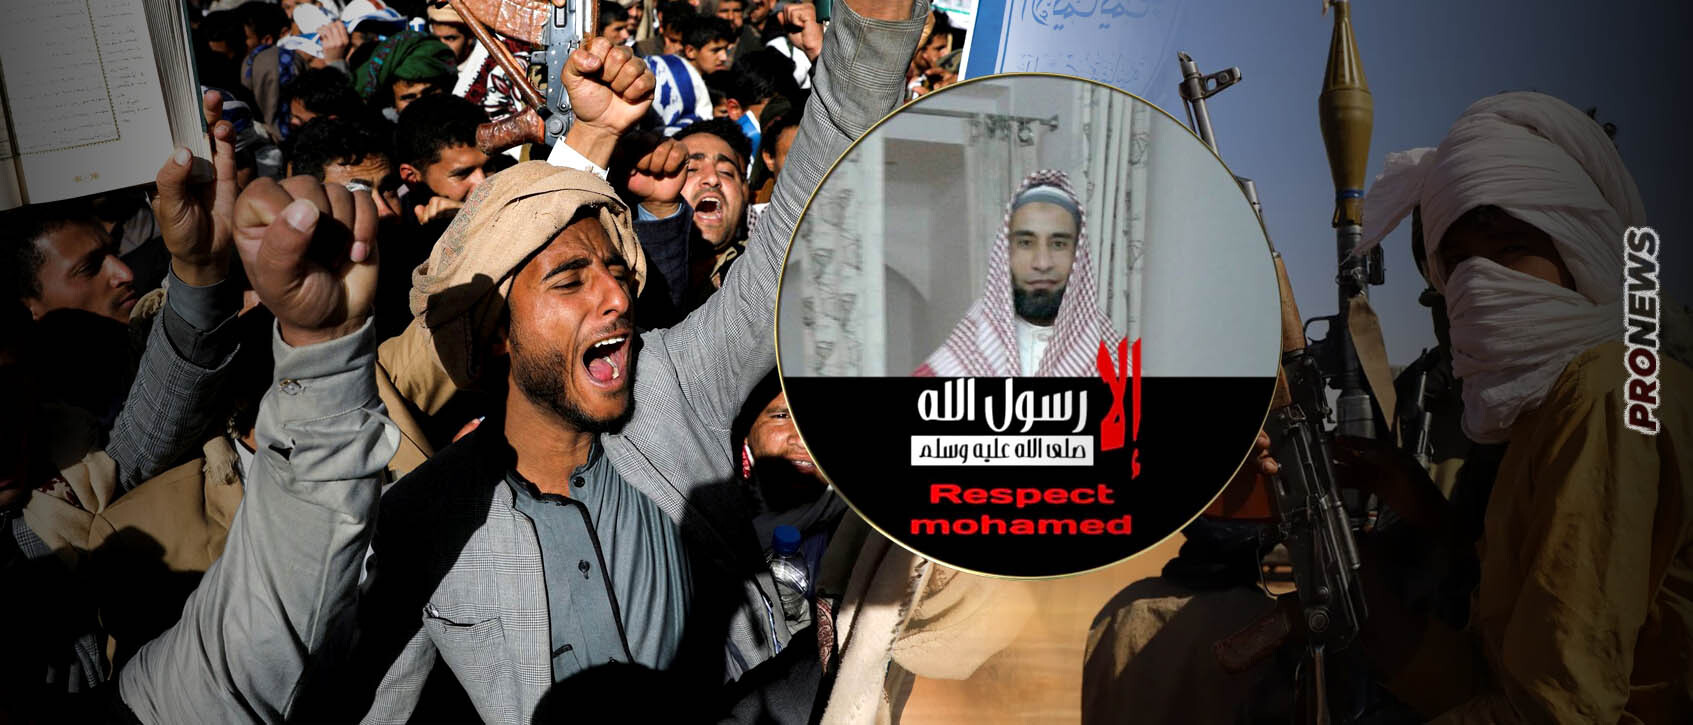 Ιμάμης στην Κρήτη υμνεί ισλαμιστές τρομοκράτες και καλεί σε «ιερό πόλεμο κατά των απίστων»! (φωτό)